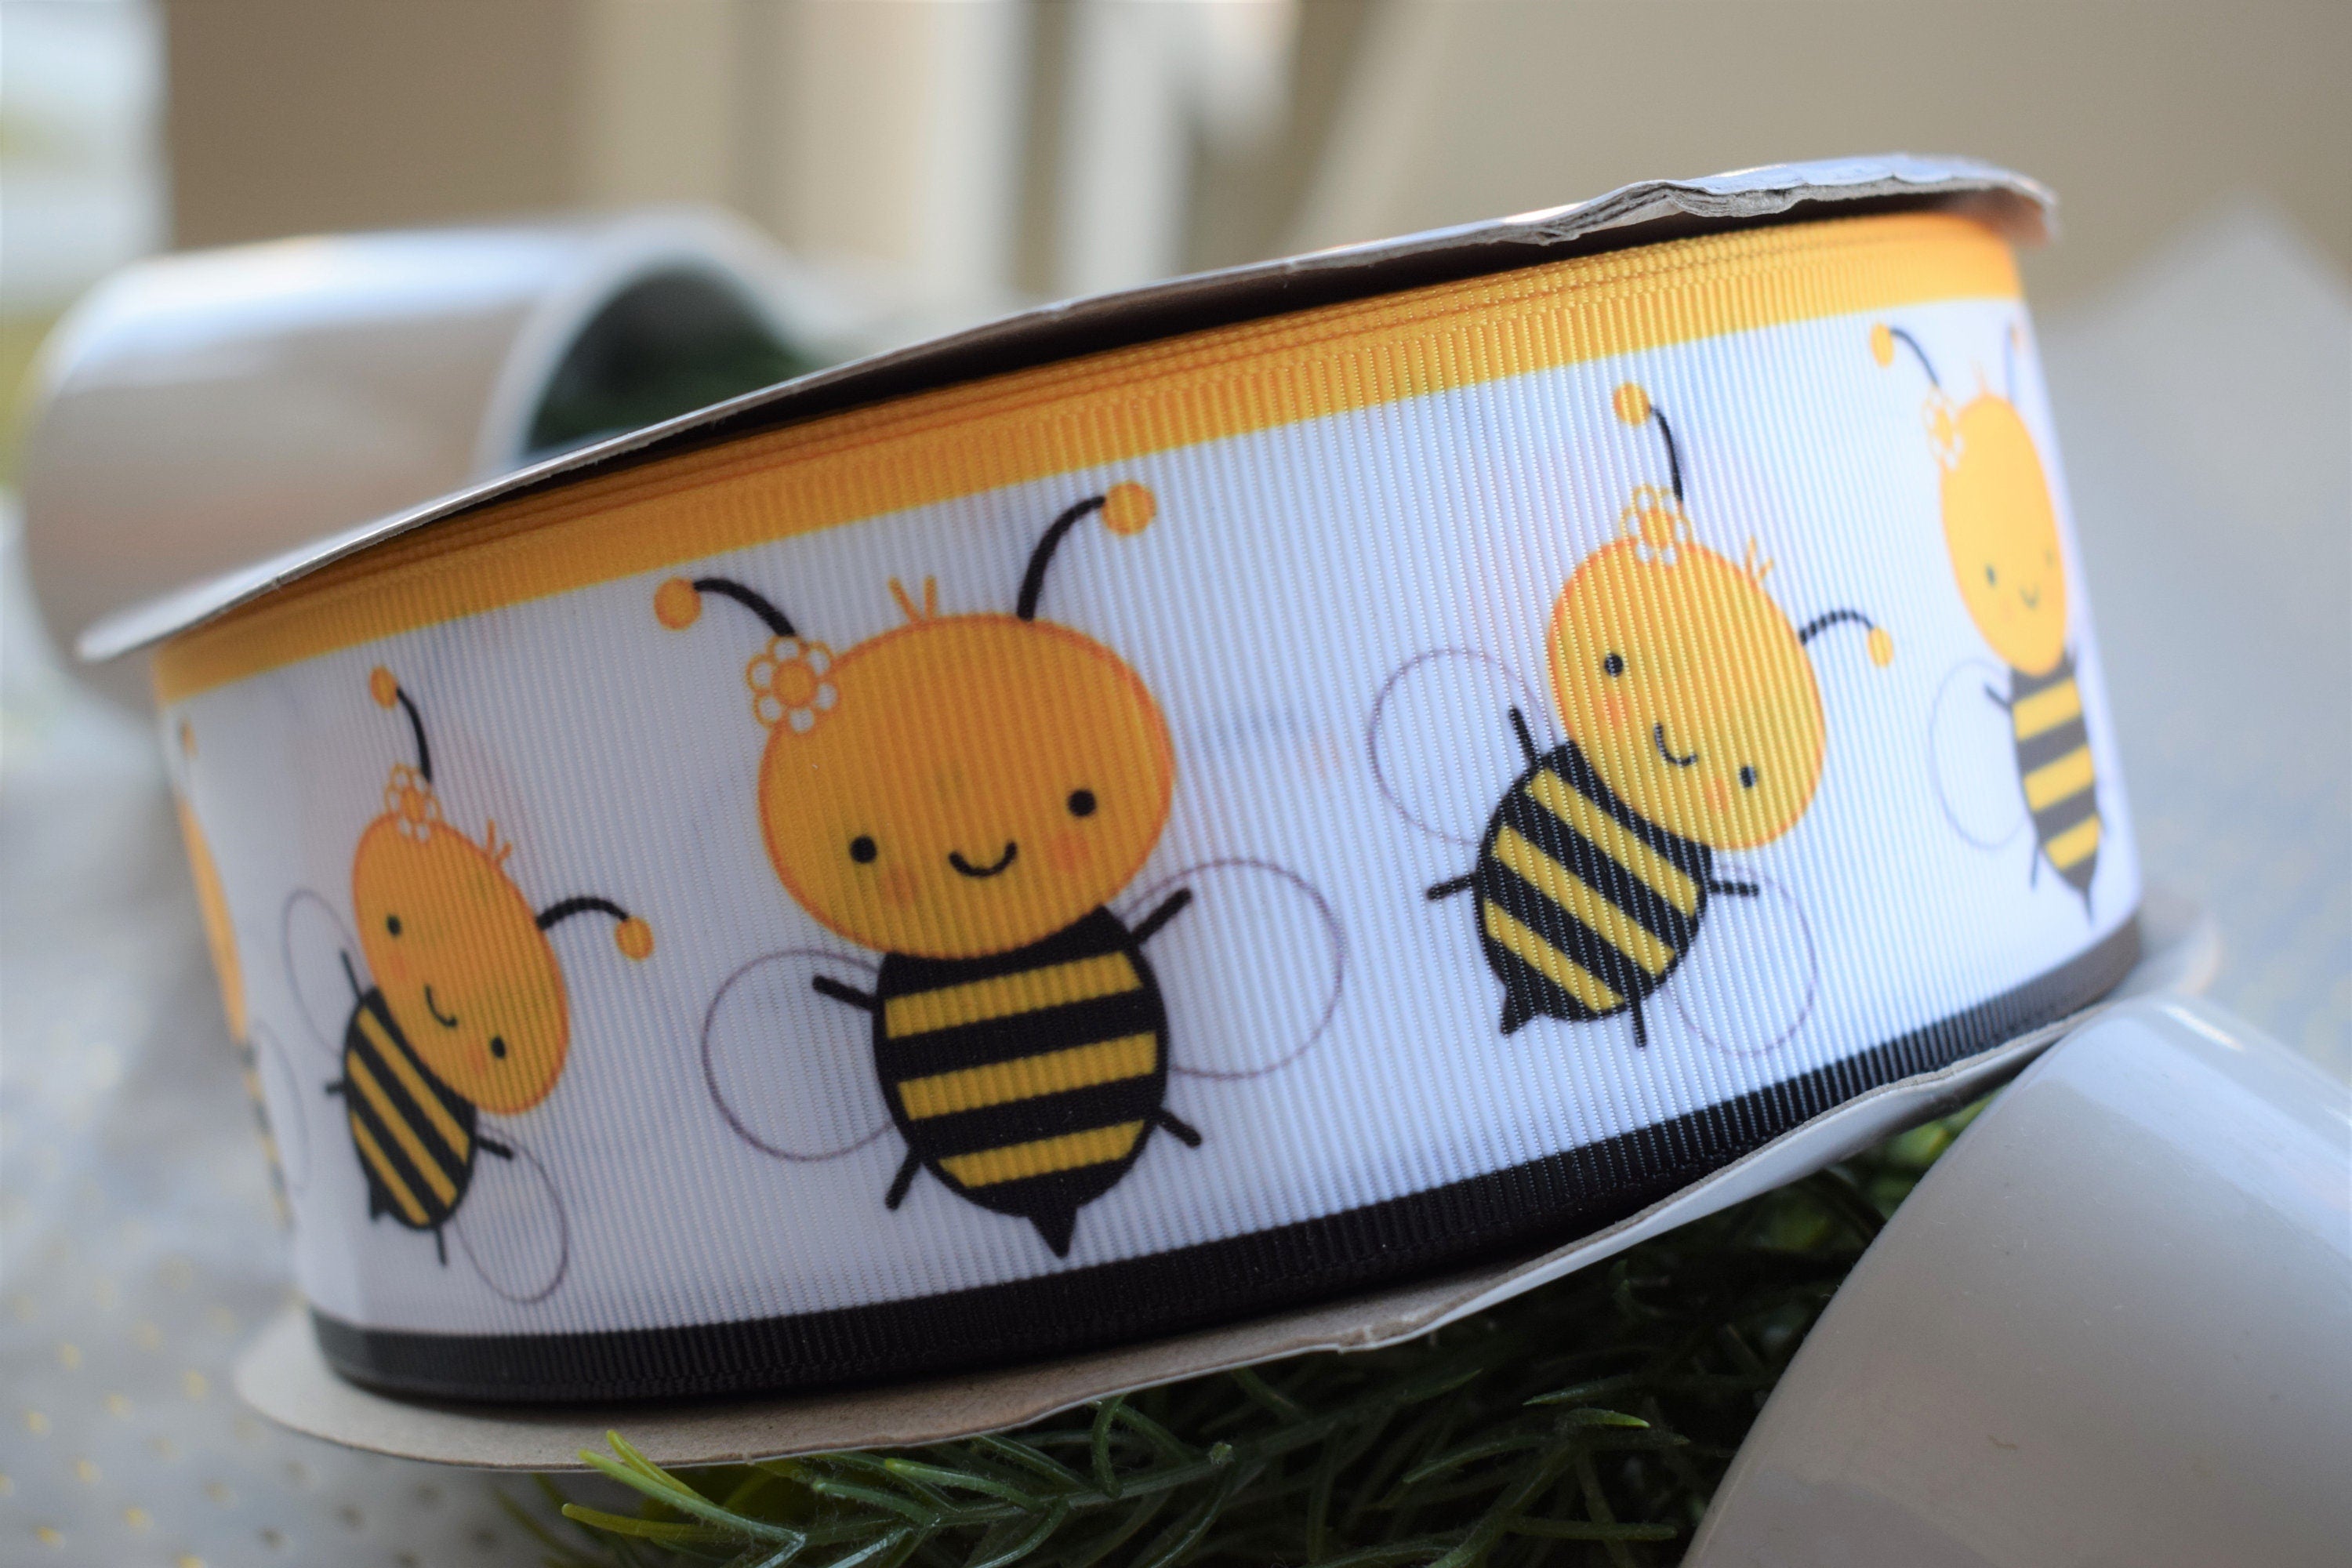 10 Yards - 2.5 Classic Honey Bees (Bee Happy) Ribbon